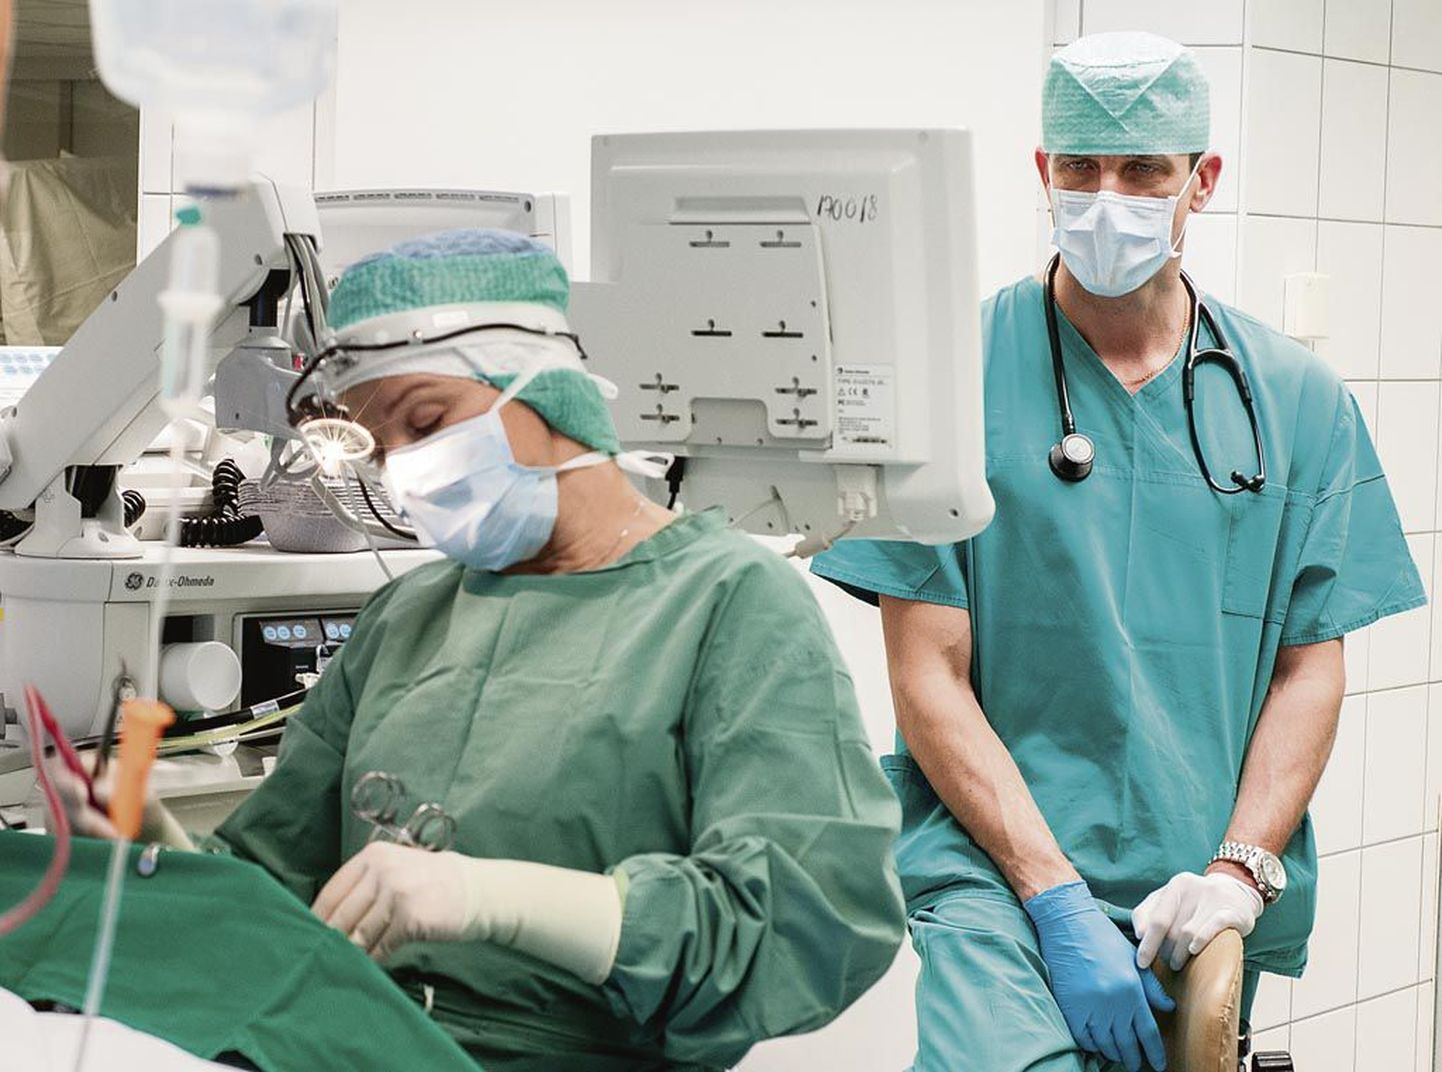 Samal ajal kui doktor Anneli Karin patsiendi mandleid lõikab, hoiab Pärnu haigla anestesioloogia-, operatiiv- ja intensiivraviteenistuse juhataja Raido Paasma toimuval silma peal.